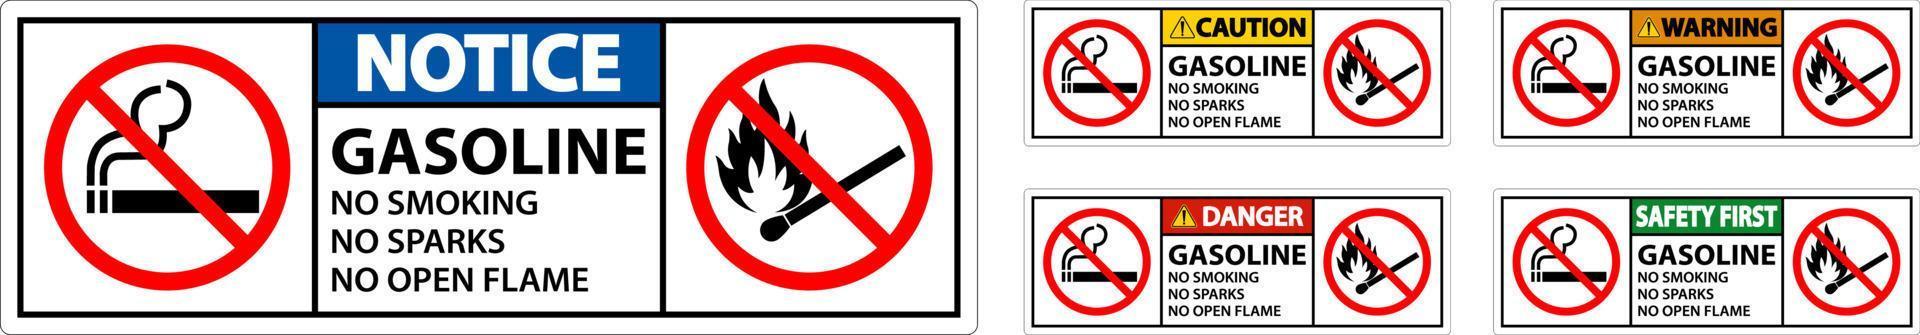 Gasolina Prohibido Fumar Chispas O Signo De Llamas Abiertas vector